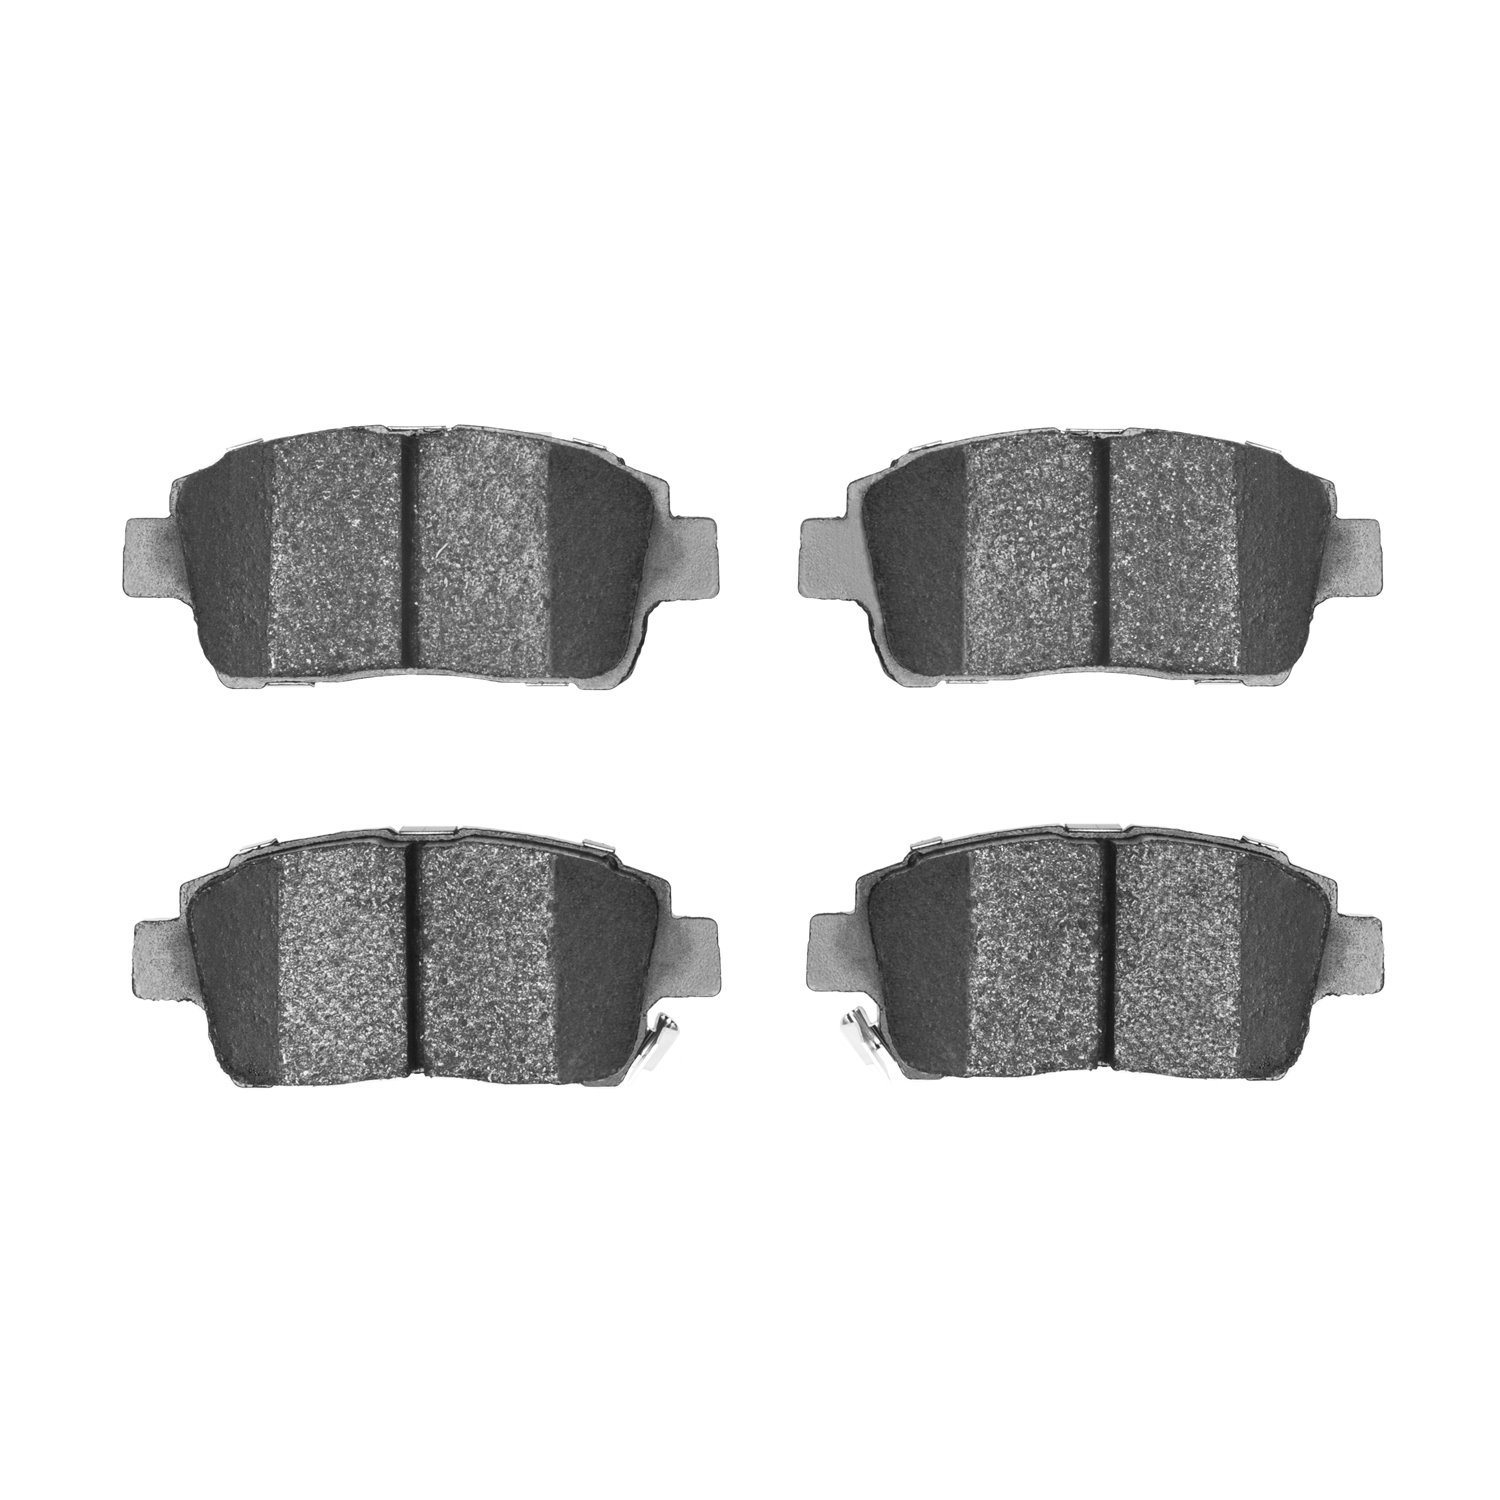 Ceramic Brake Pads, 2000-2015 Fits Multiple Makes/Models, Position: Front